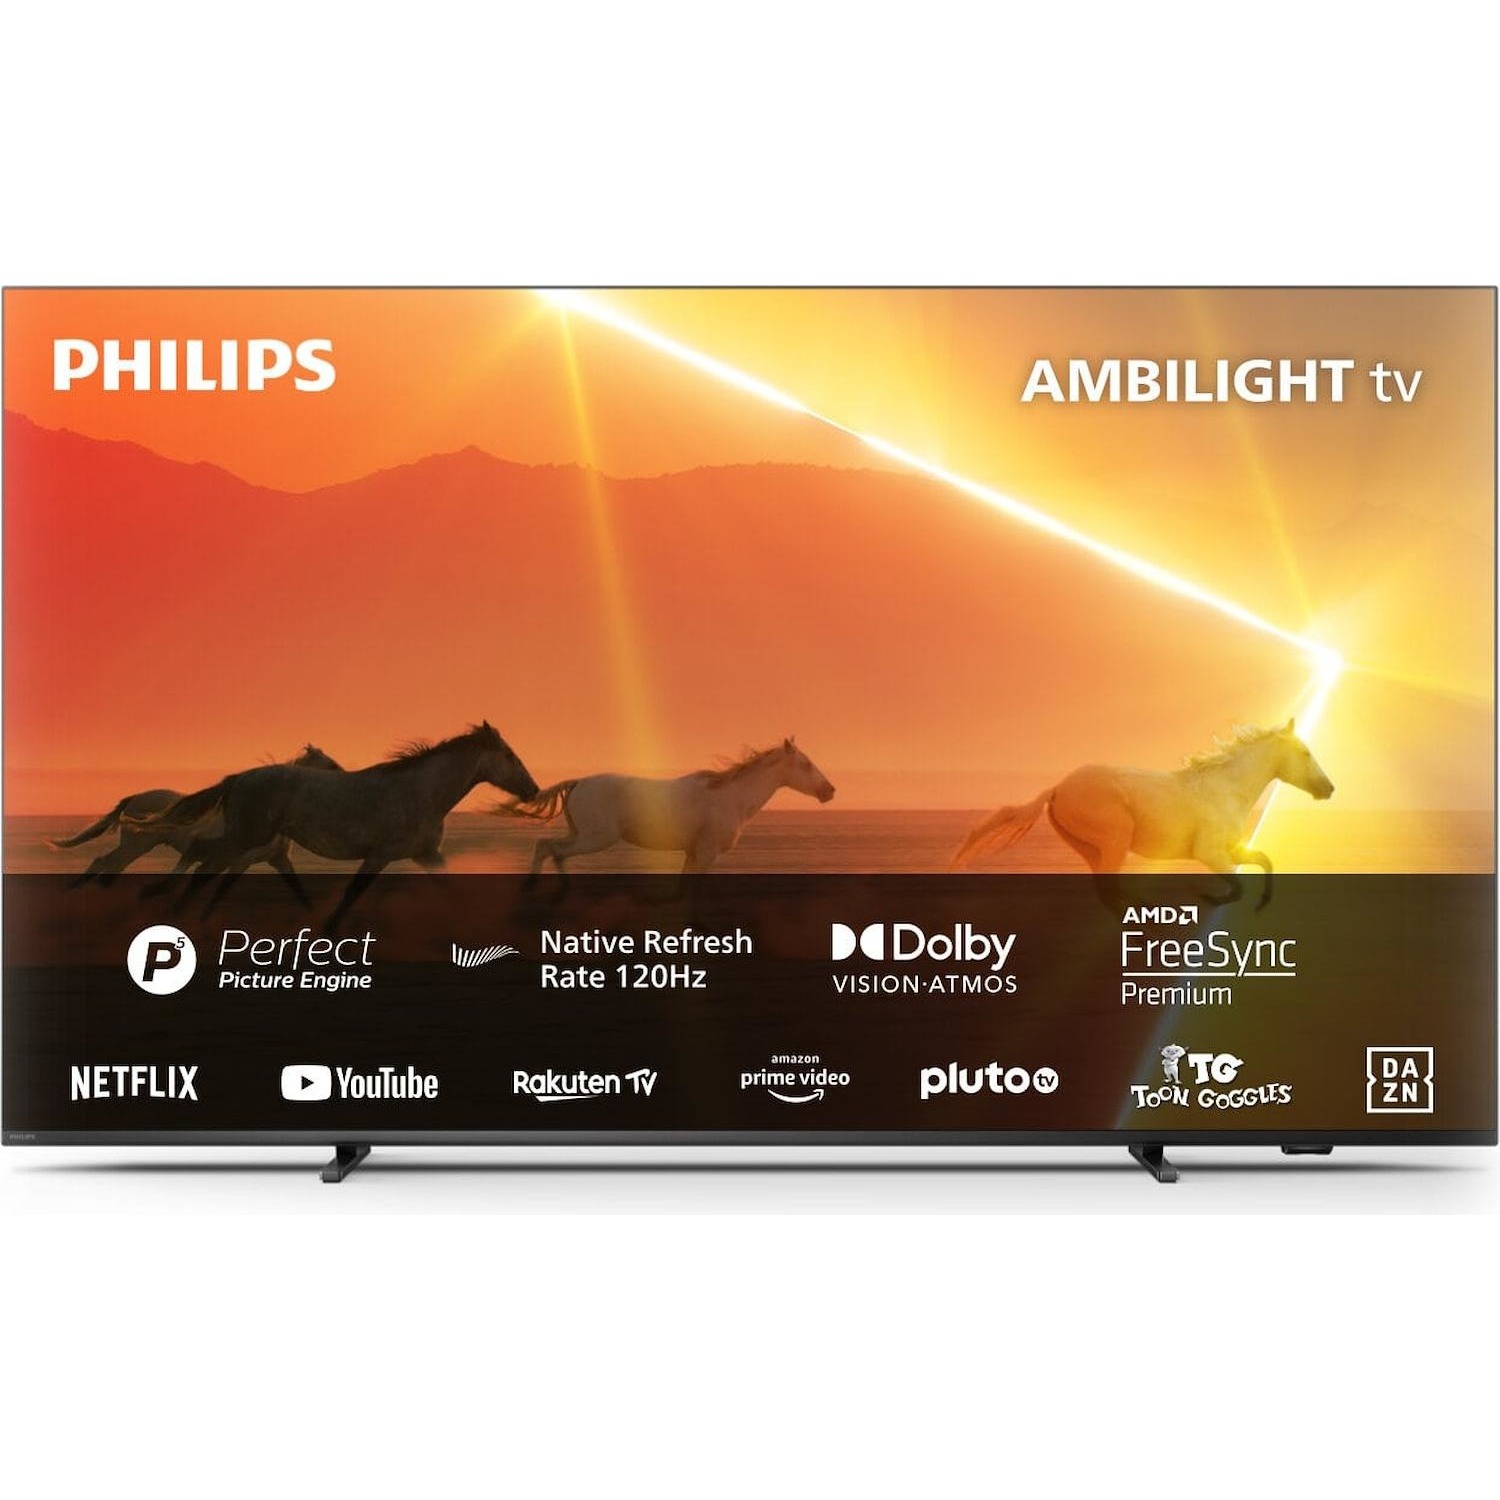 Immagine per TV MINI LED Smart 4K UHD Philips 55PML9008 Ambilight da DIMOStore